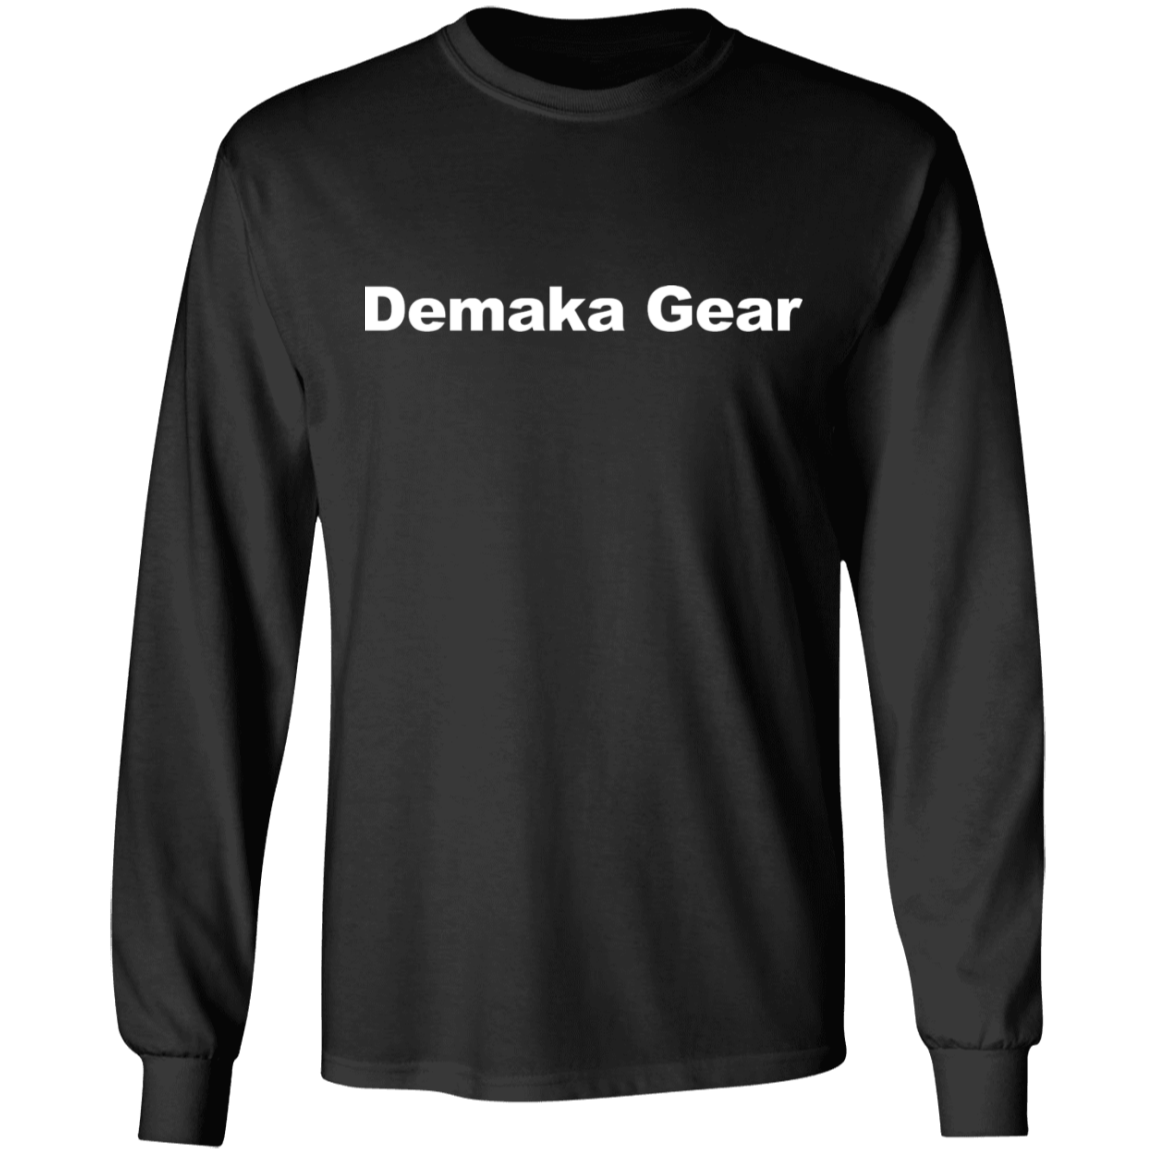 Demaka Gear Ultra Cotton T-Shirt